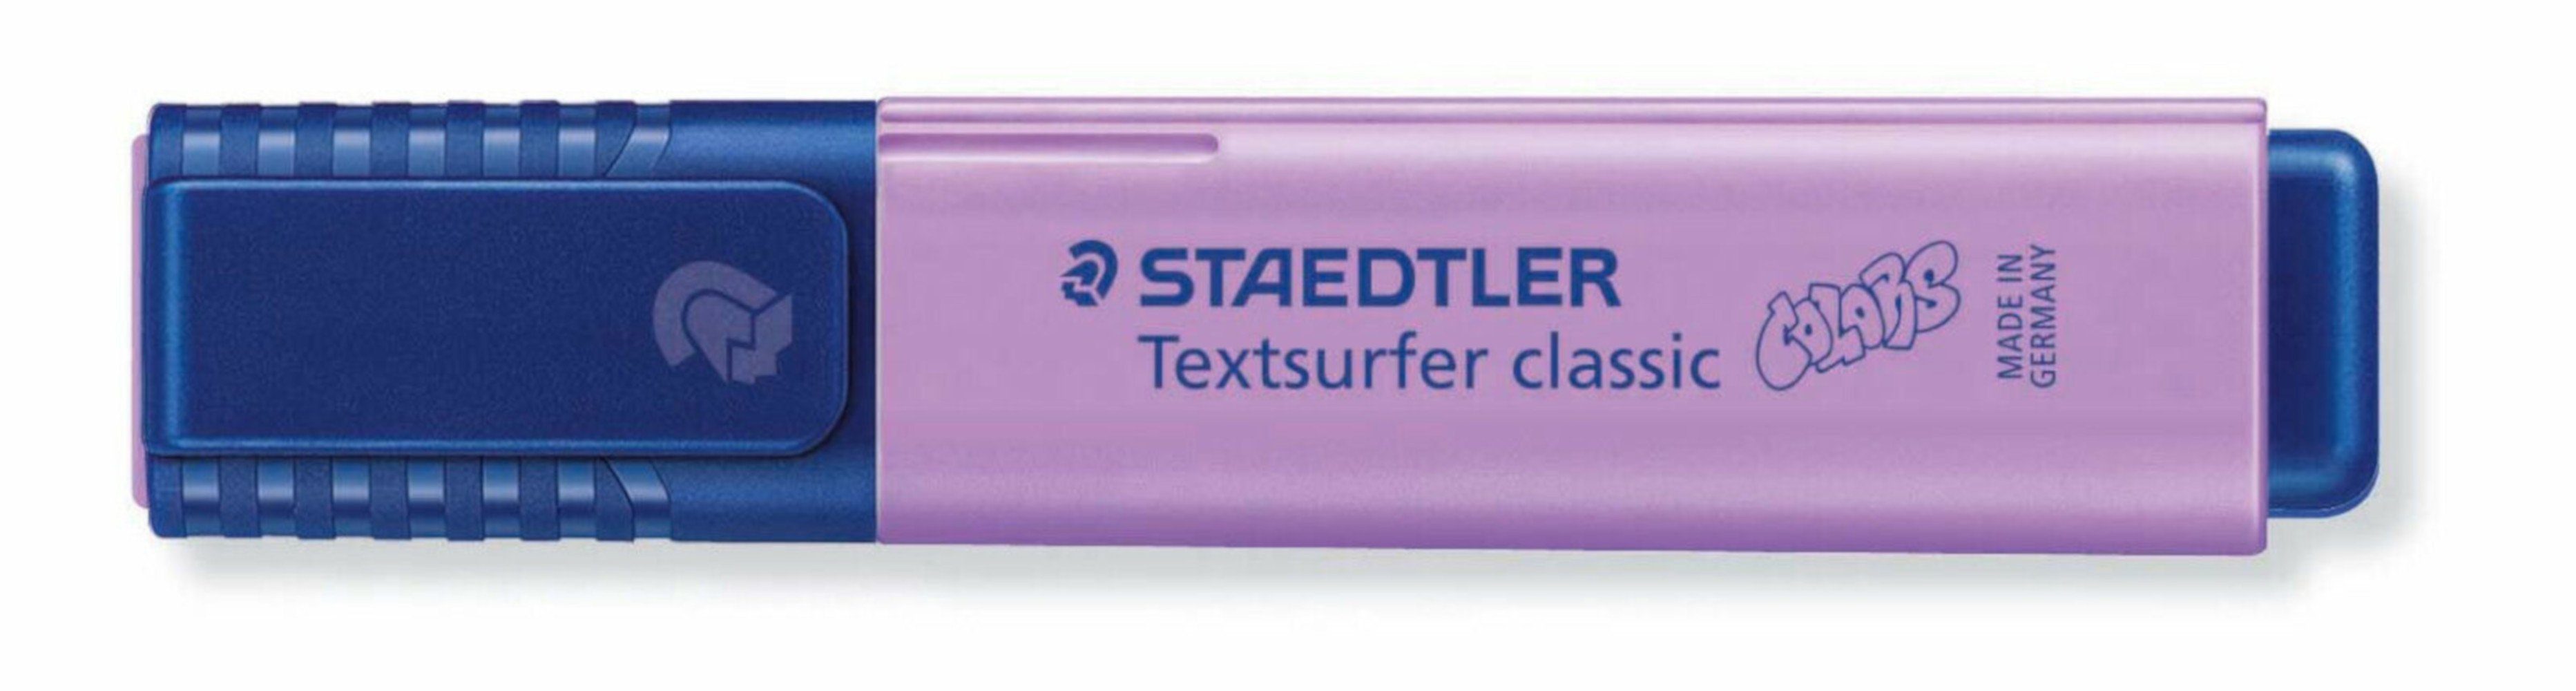 STAEDTLER Marker Staedtler Textsurfer classic colors lavendel 364 C-620 Leuchtstift, INK JET SAFE